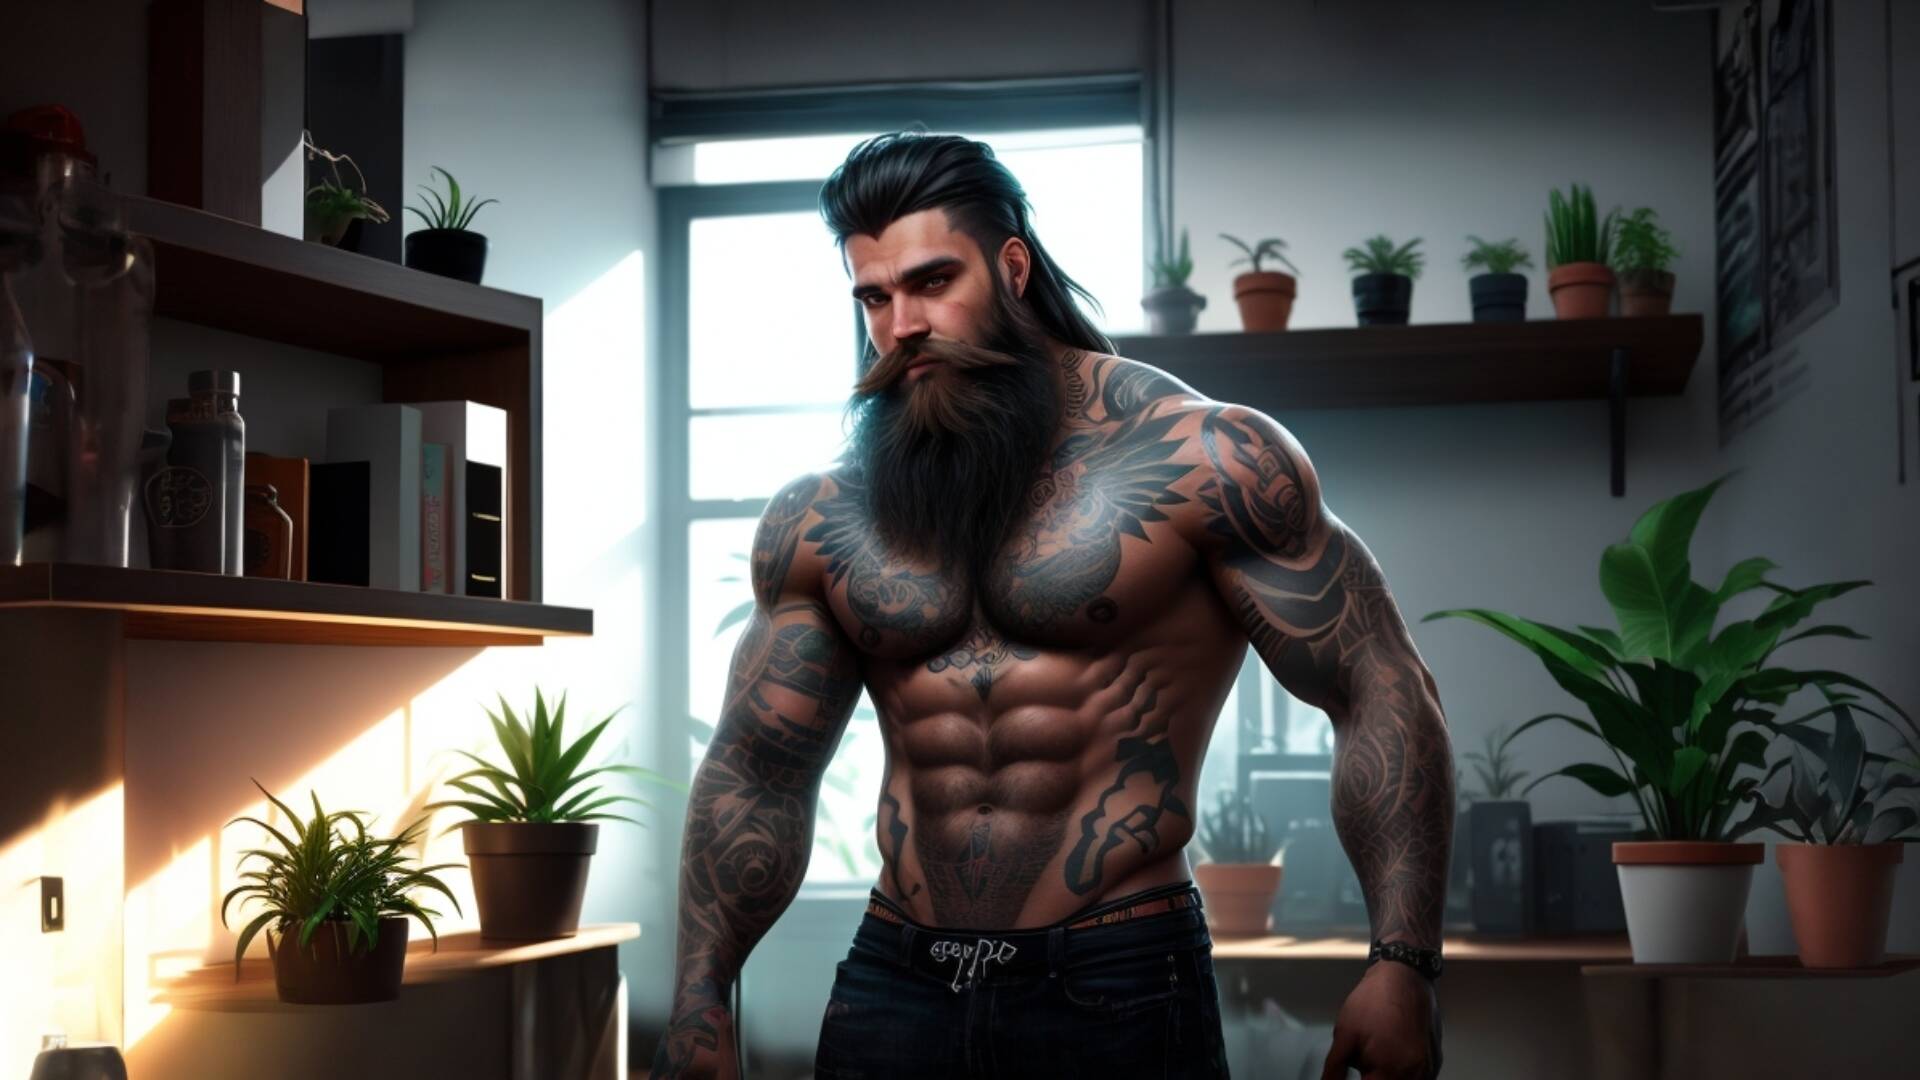 Default Tattooed Man Full Beard Neon Lights Throughout Room An 0